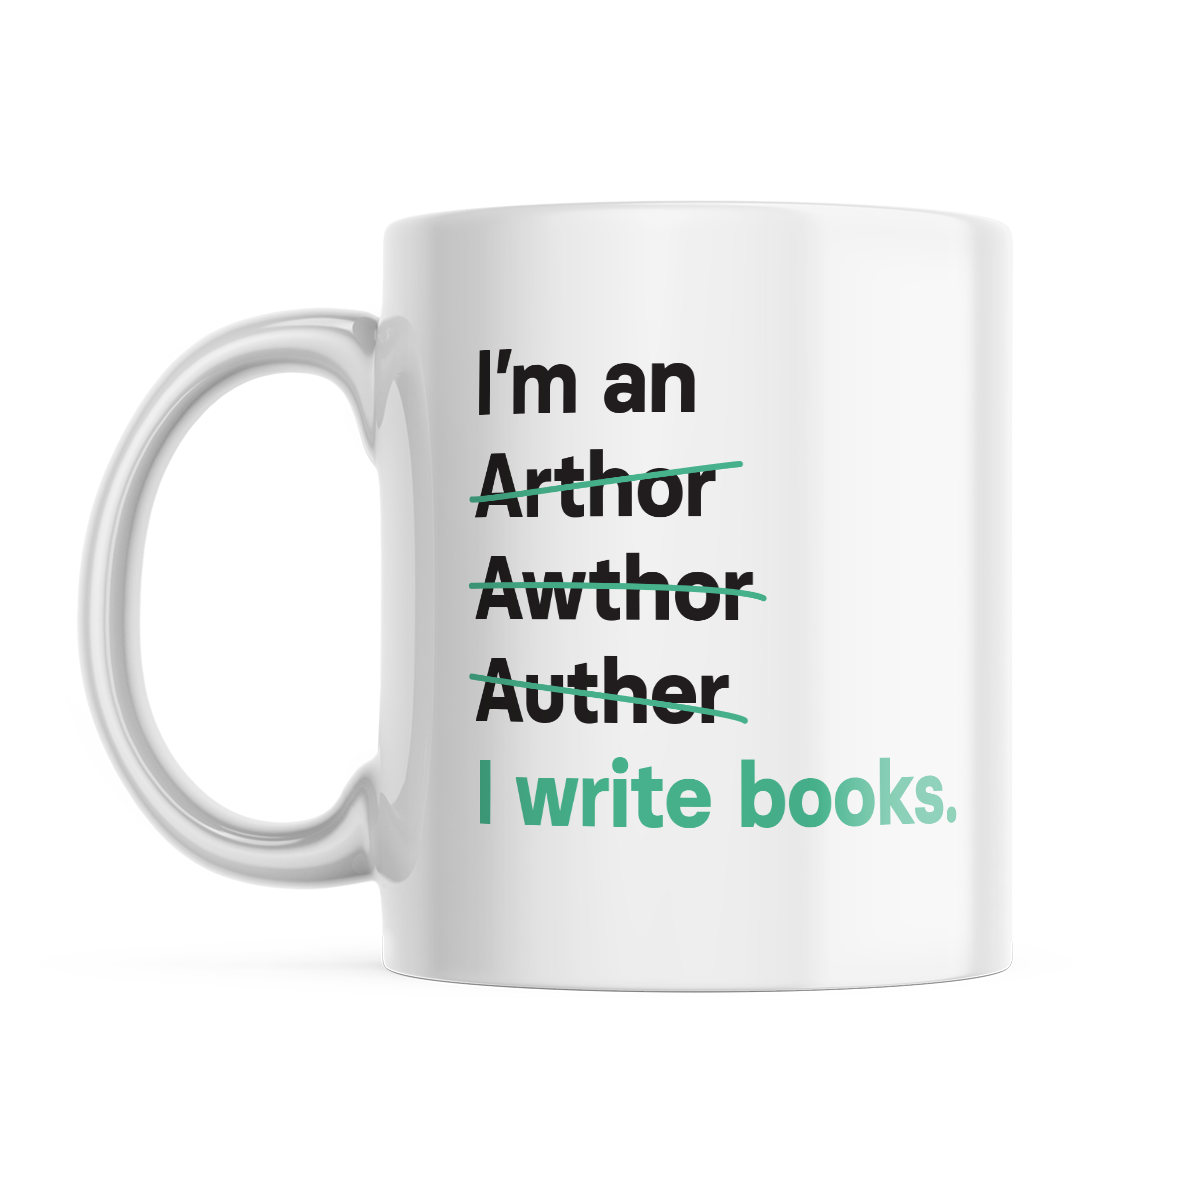 I'm an Author